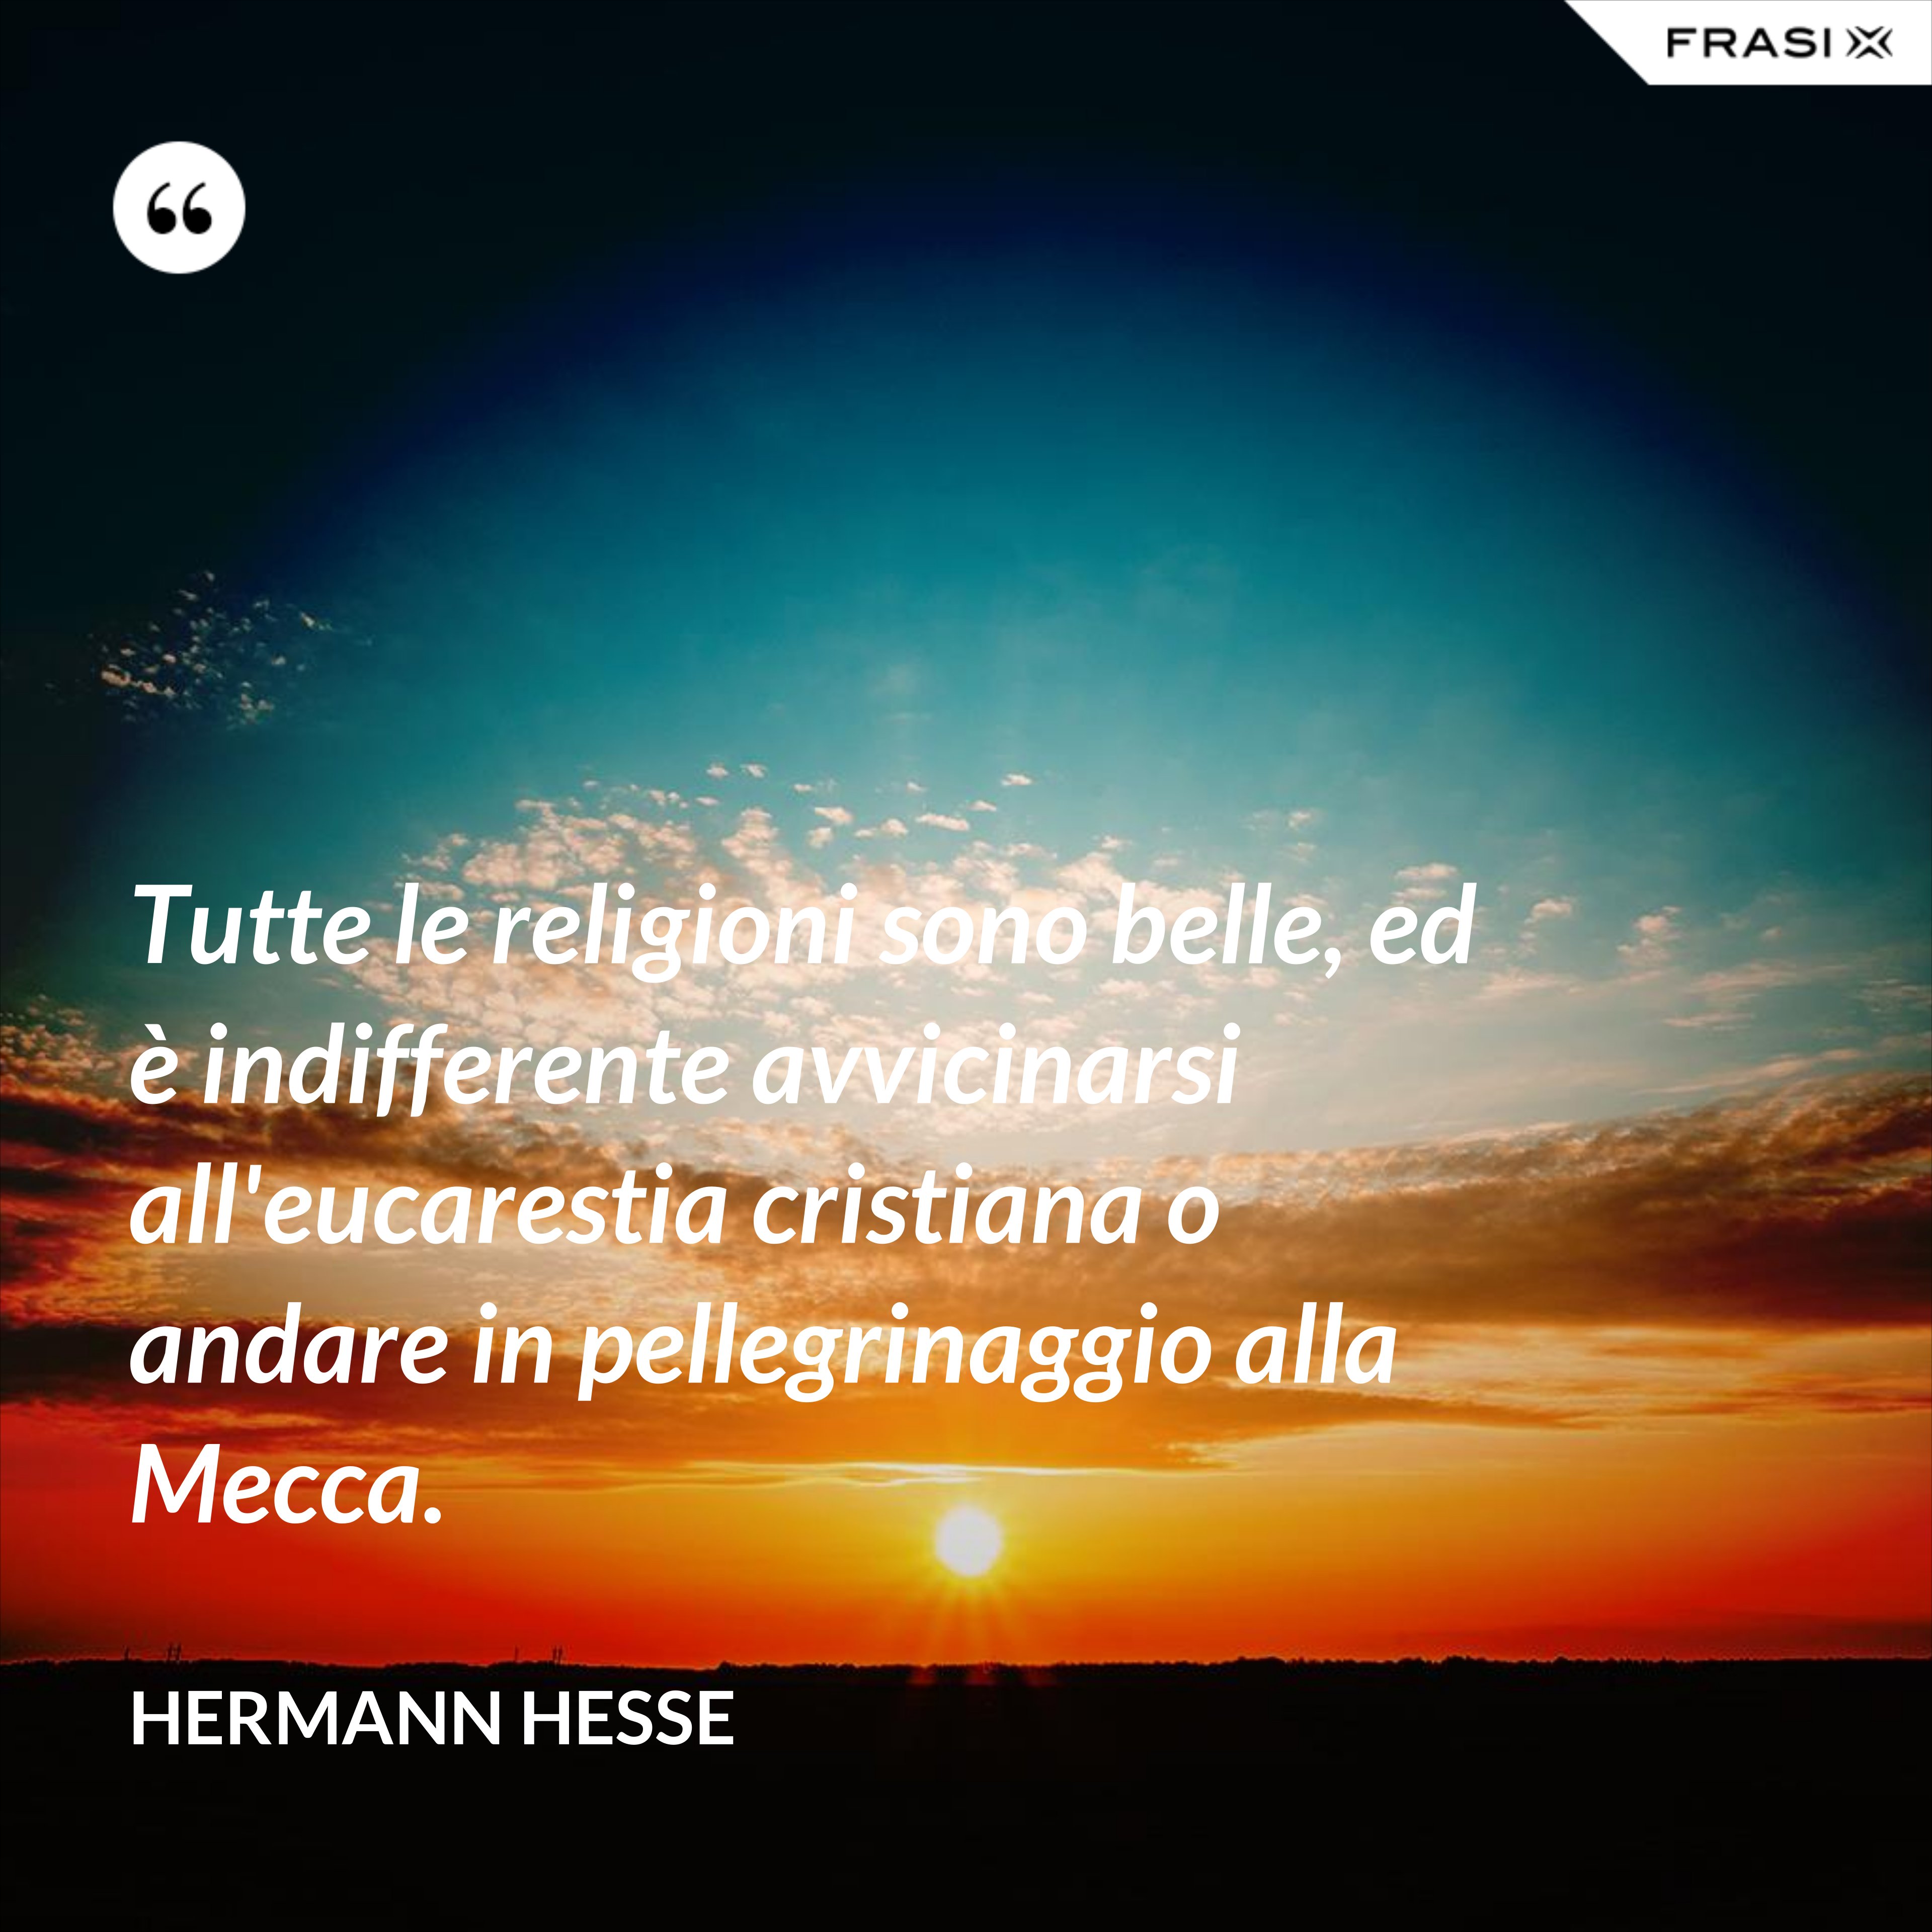 Tutte le religioni sono belle, ed è indifferente avvicinarsi all'eucarestia cristiana o andare in pellegrinaggio alla Mecca. - Hermann Hesse